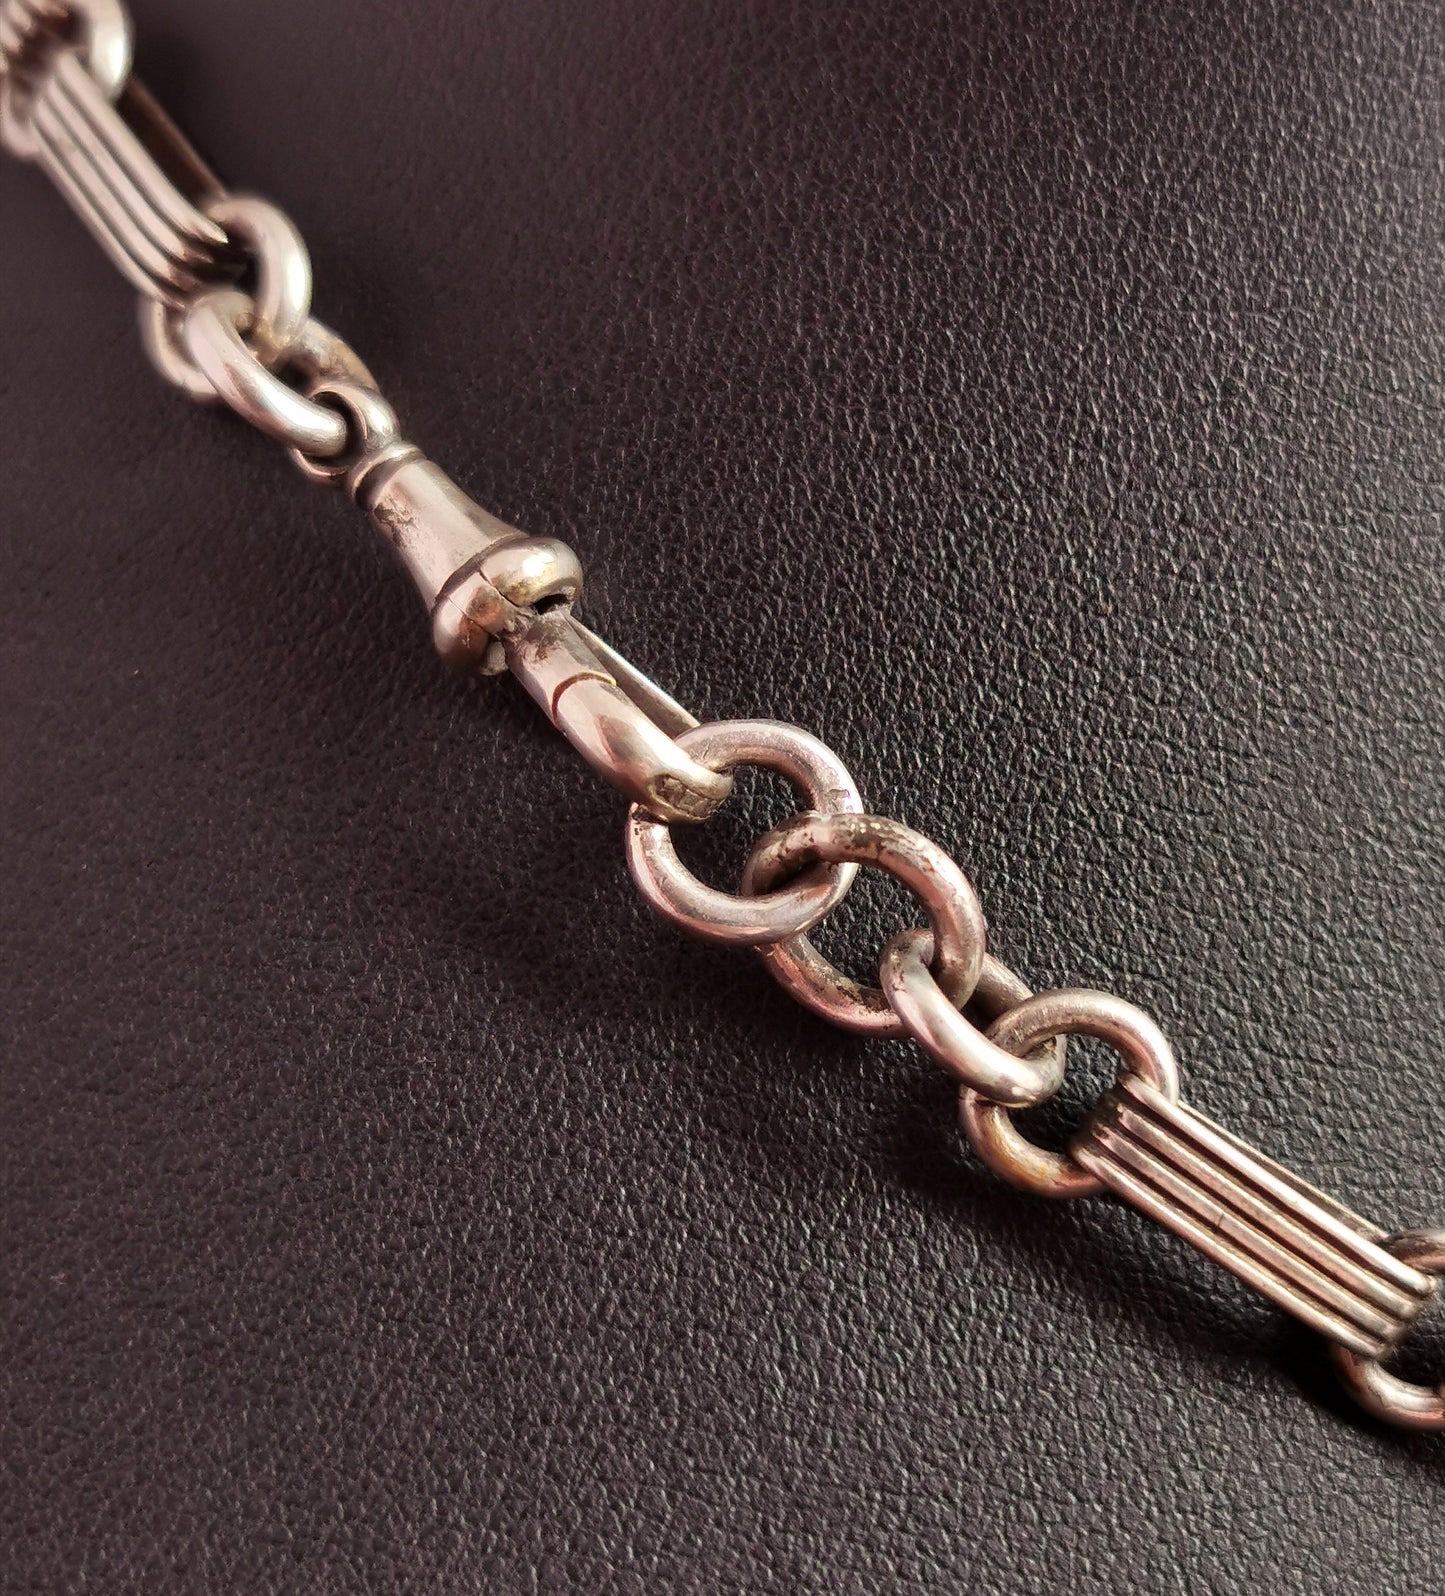 Antique Victorian silver Albert chain, watch chain, fancy link